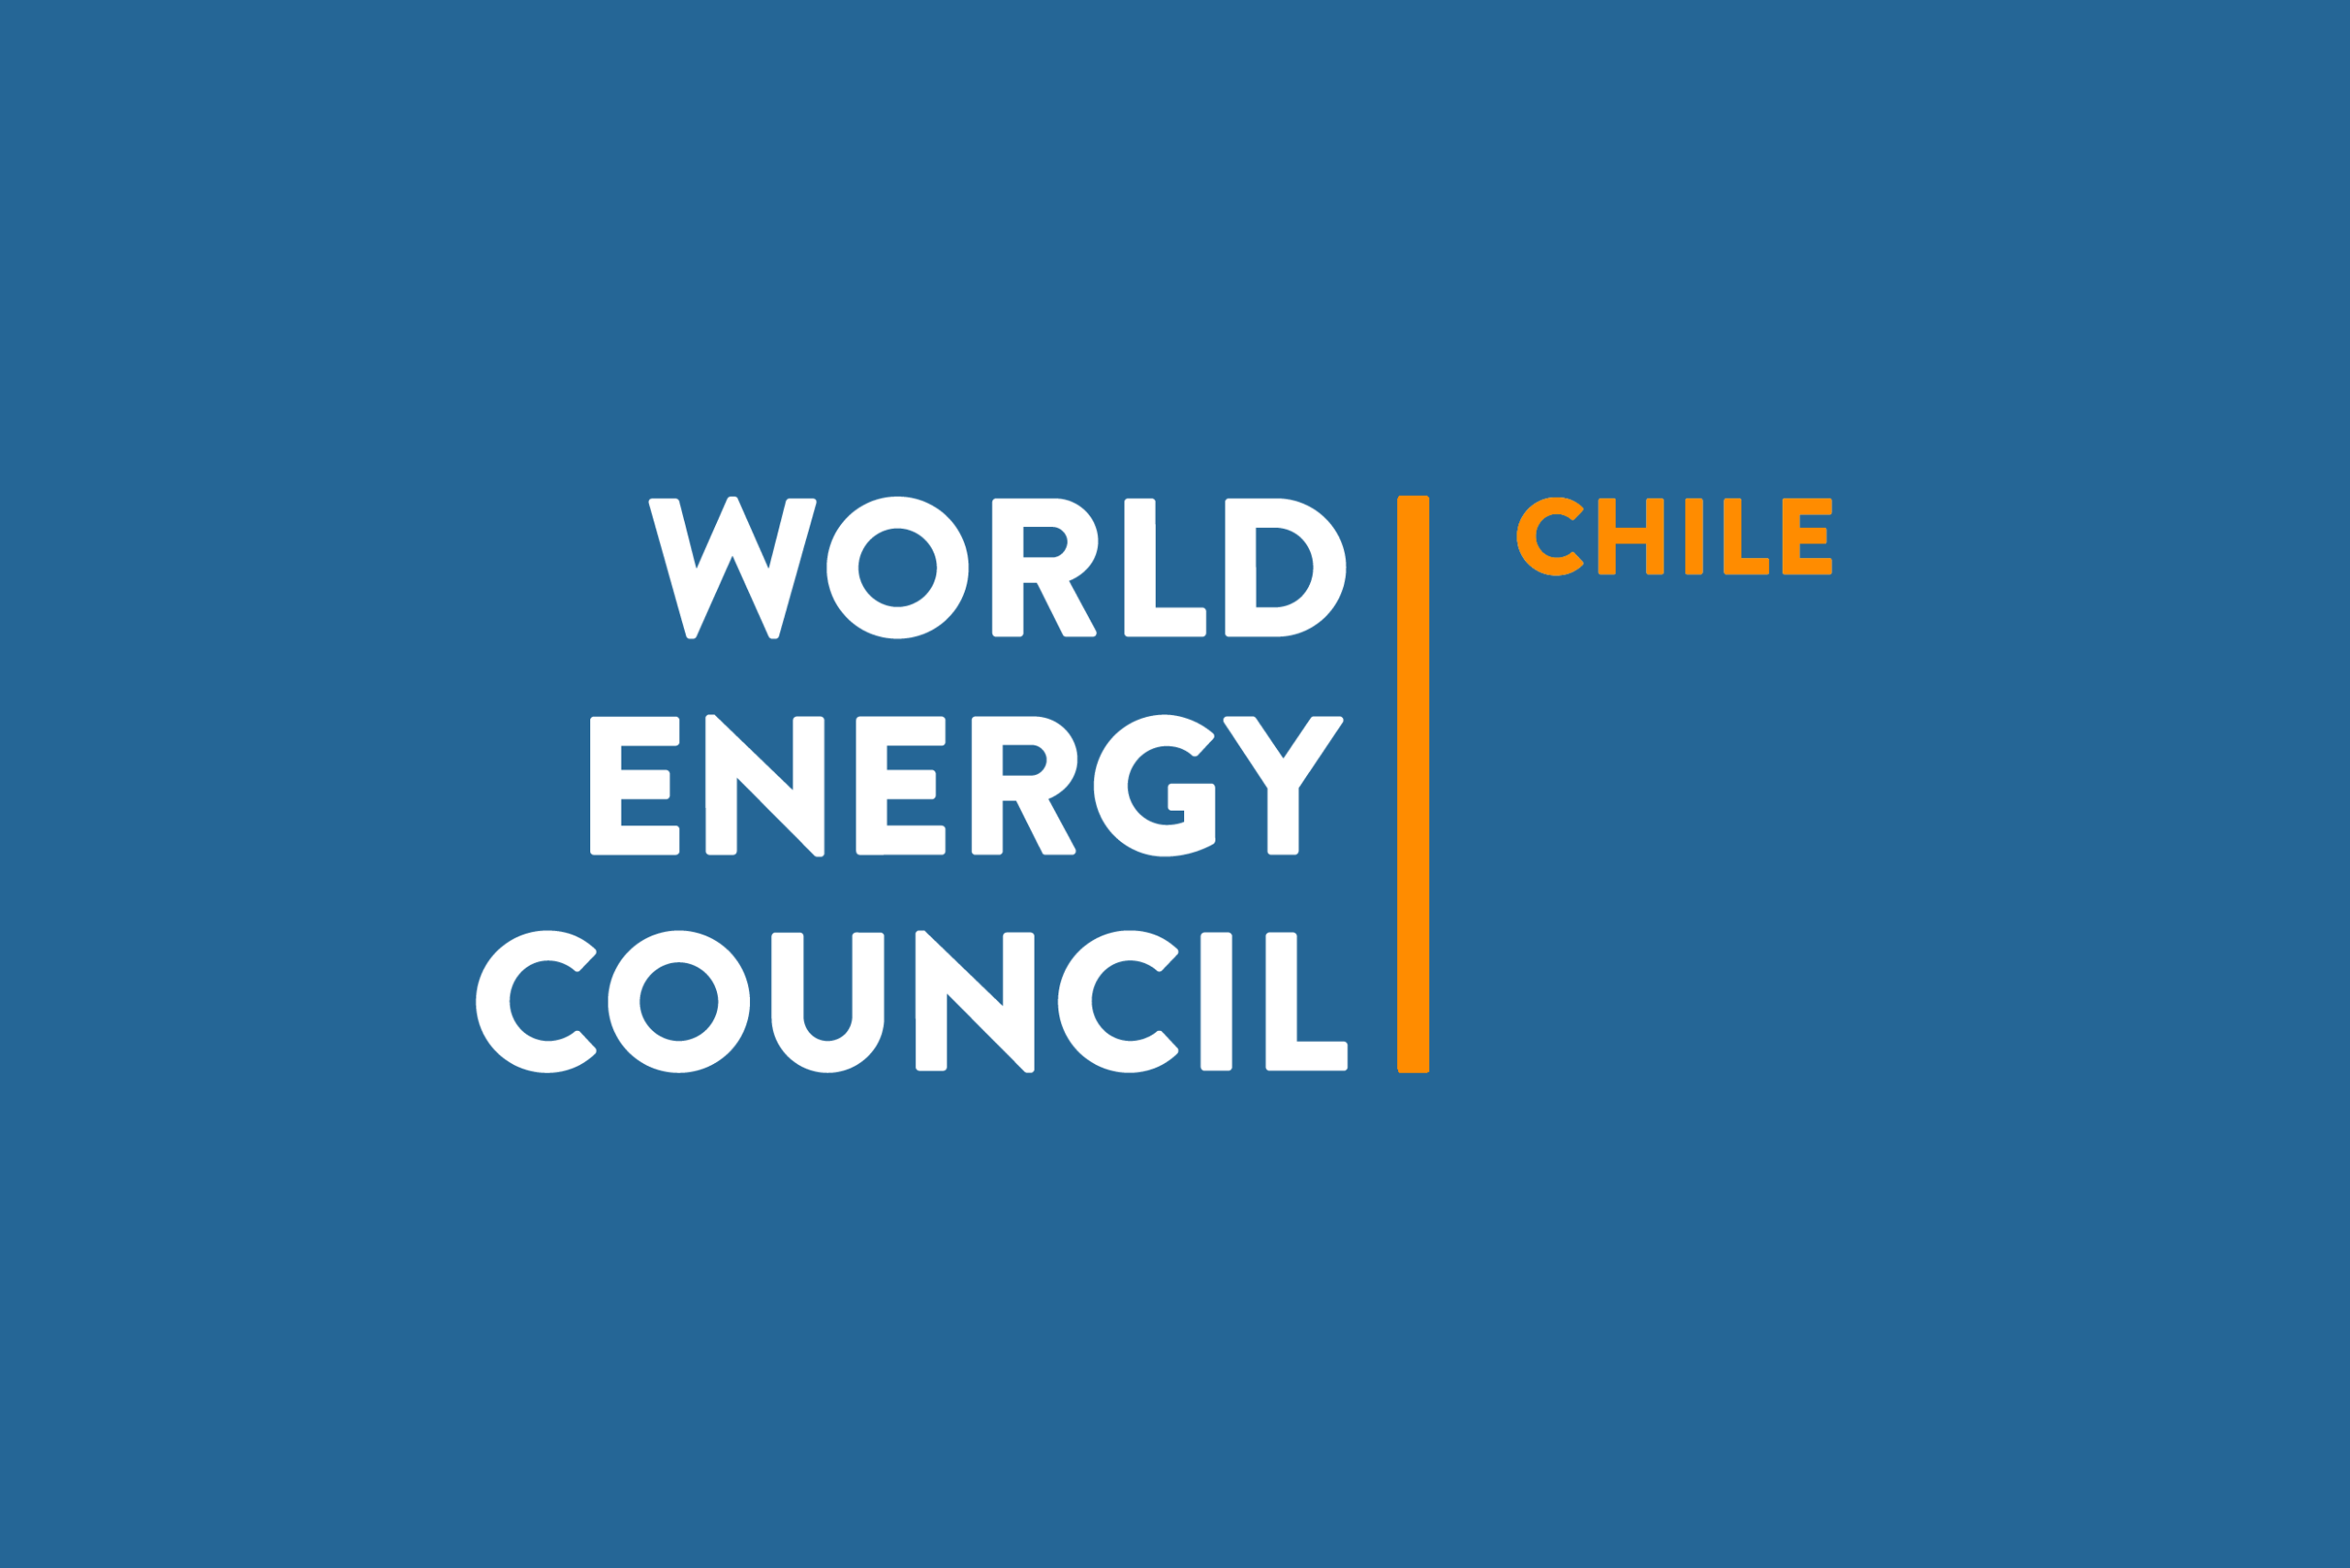 World Energy Council fija postura respecto a la realización del 25° Congreso Mundial de Energía